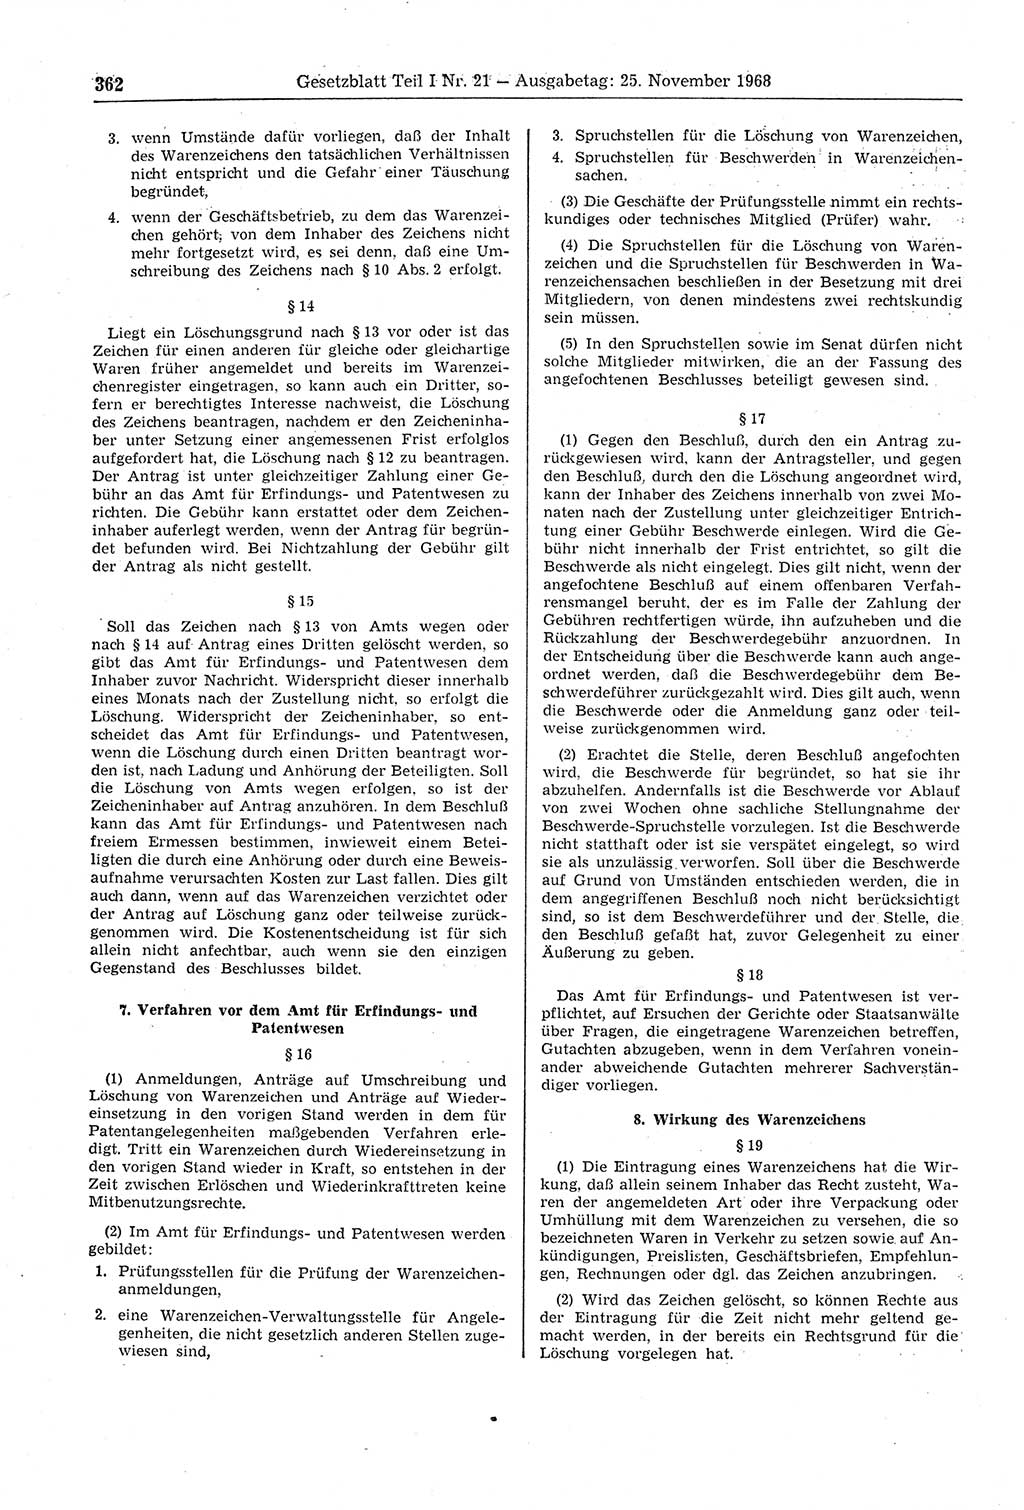 Gesetzblatt (GBl.) der Deutschen Demokratischen Republik (DDR) Teil Ⅰ 1968, Seite 362 (GBl. DDR Ⅰ 1968, S. 362)